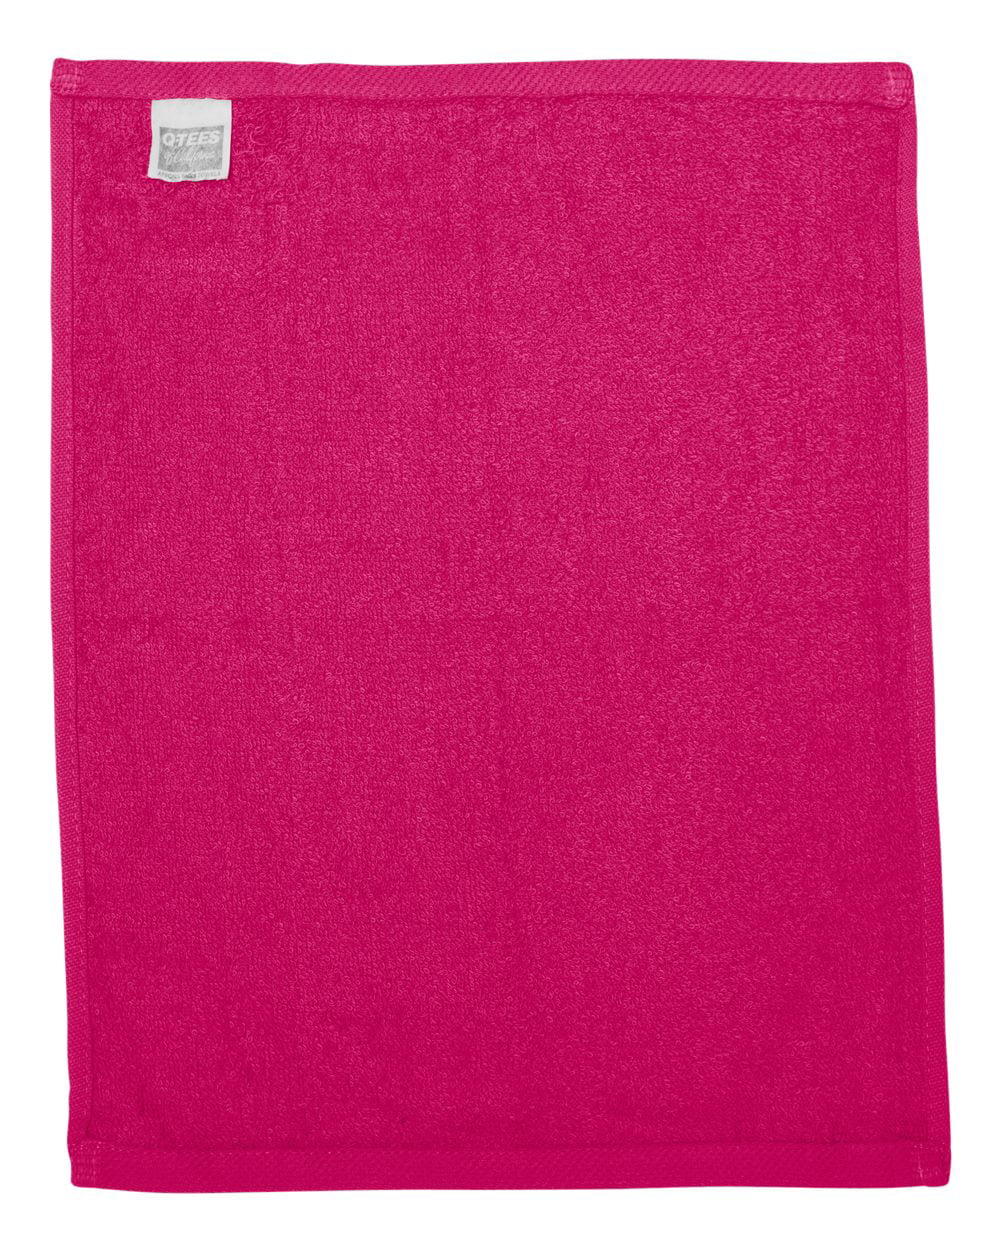 N A USMC Logo Quick Drying Towel Schnelltrocknendes Handtuch Handt¨¹Cher Leichtes Und Schnell Trocknendes Reisetuch 40x80 cm 